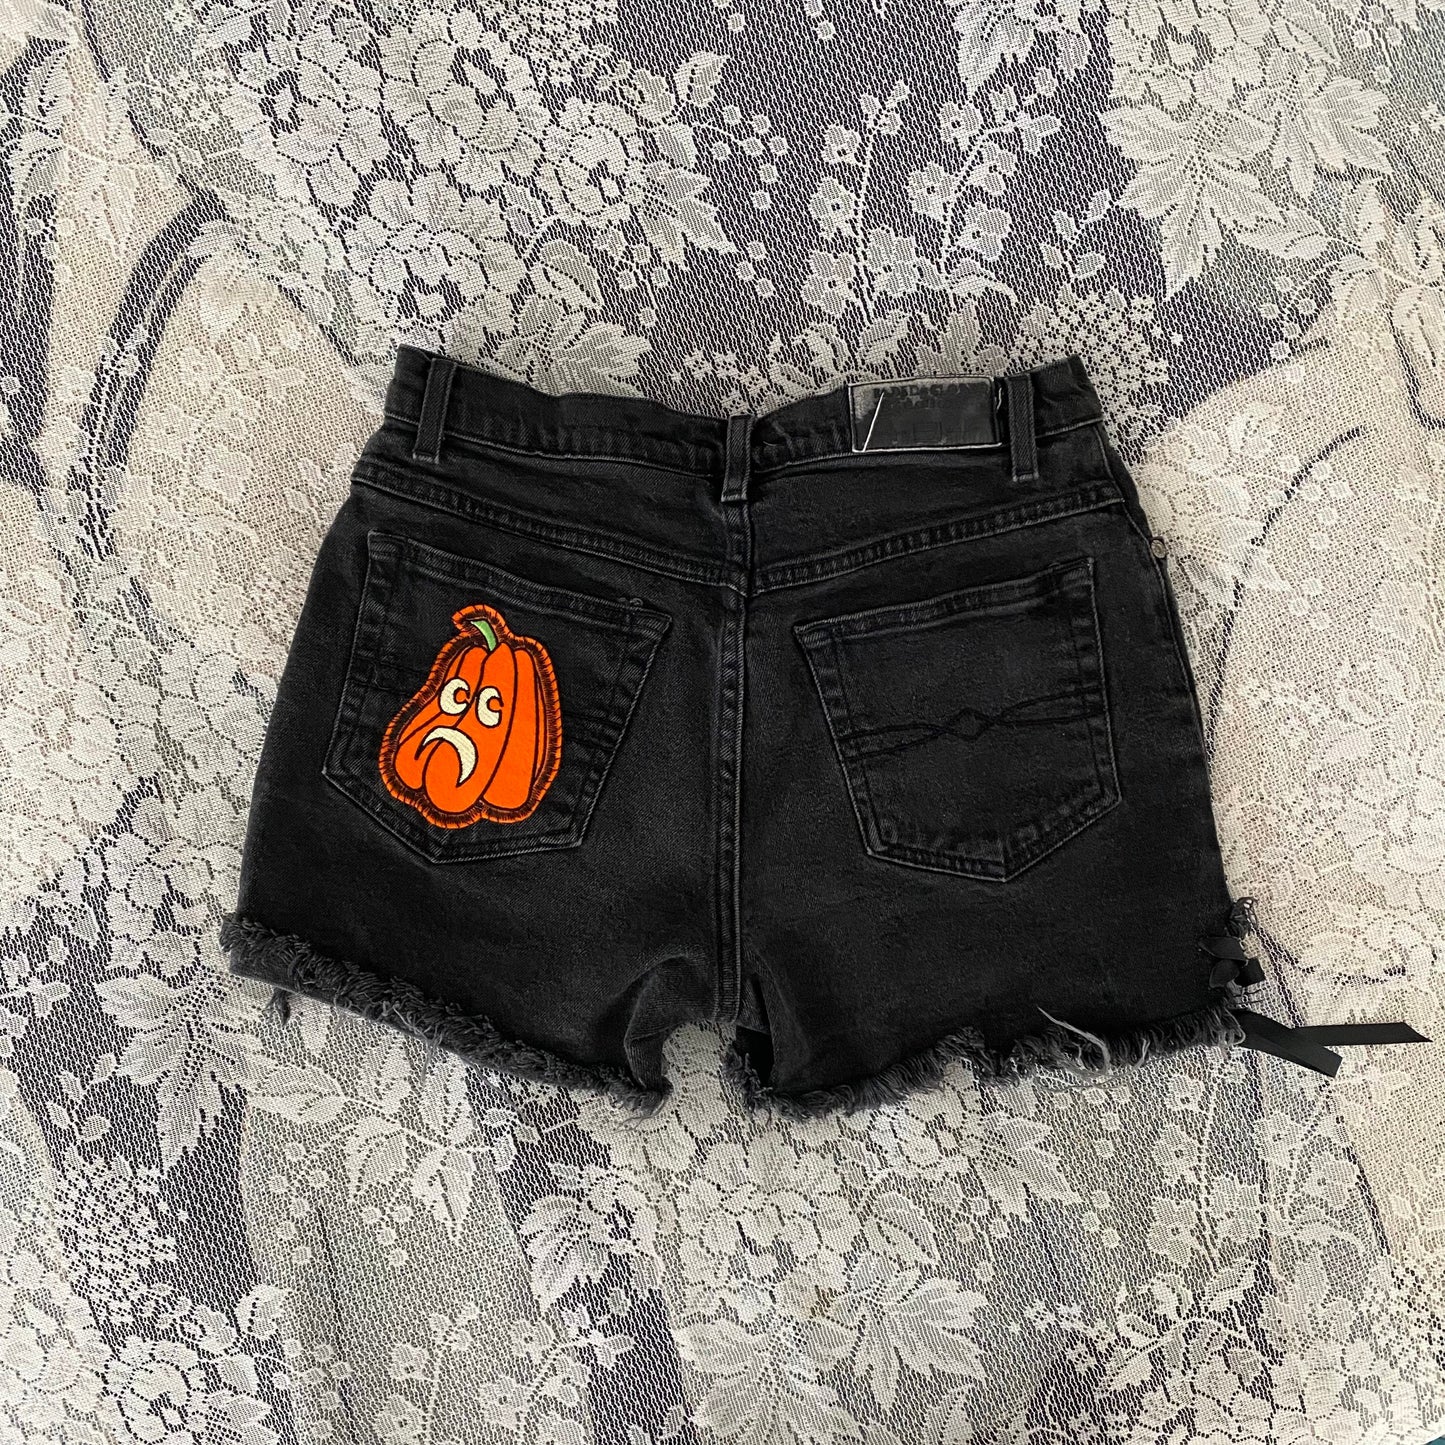 spooky shorts